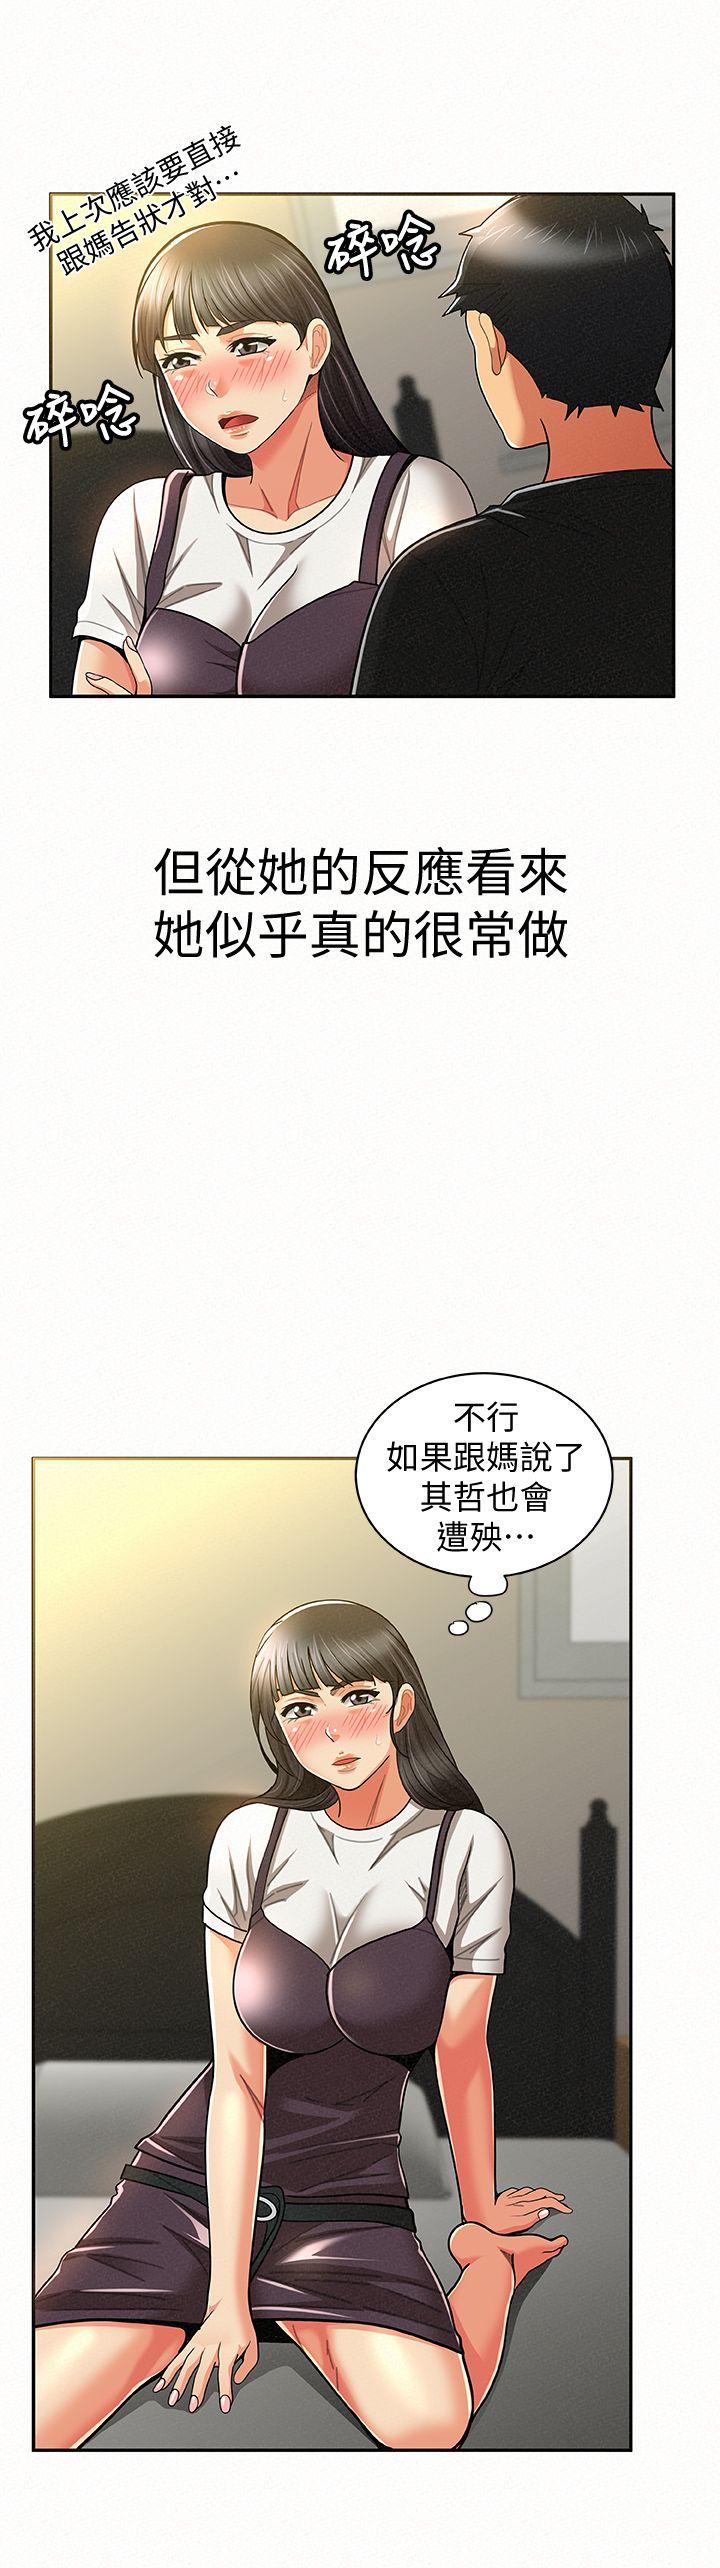 韩国污漫画 報告夫人 第11话-终于到手的诱惑机会 21